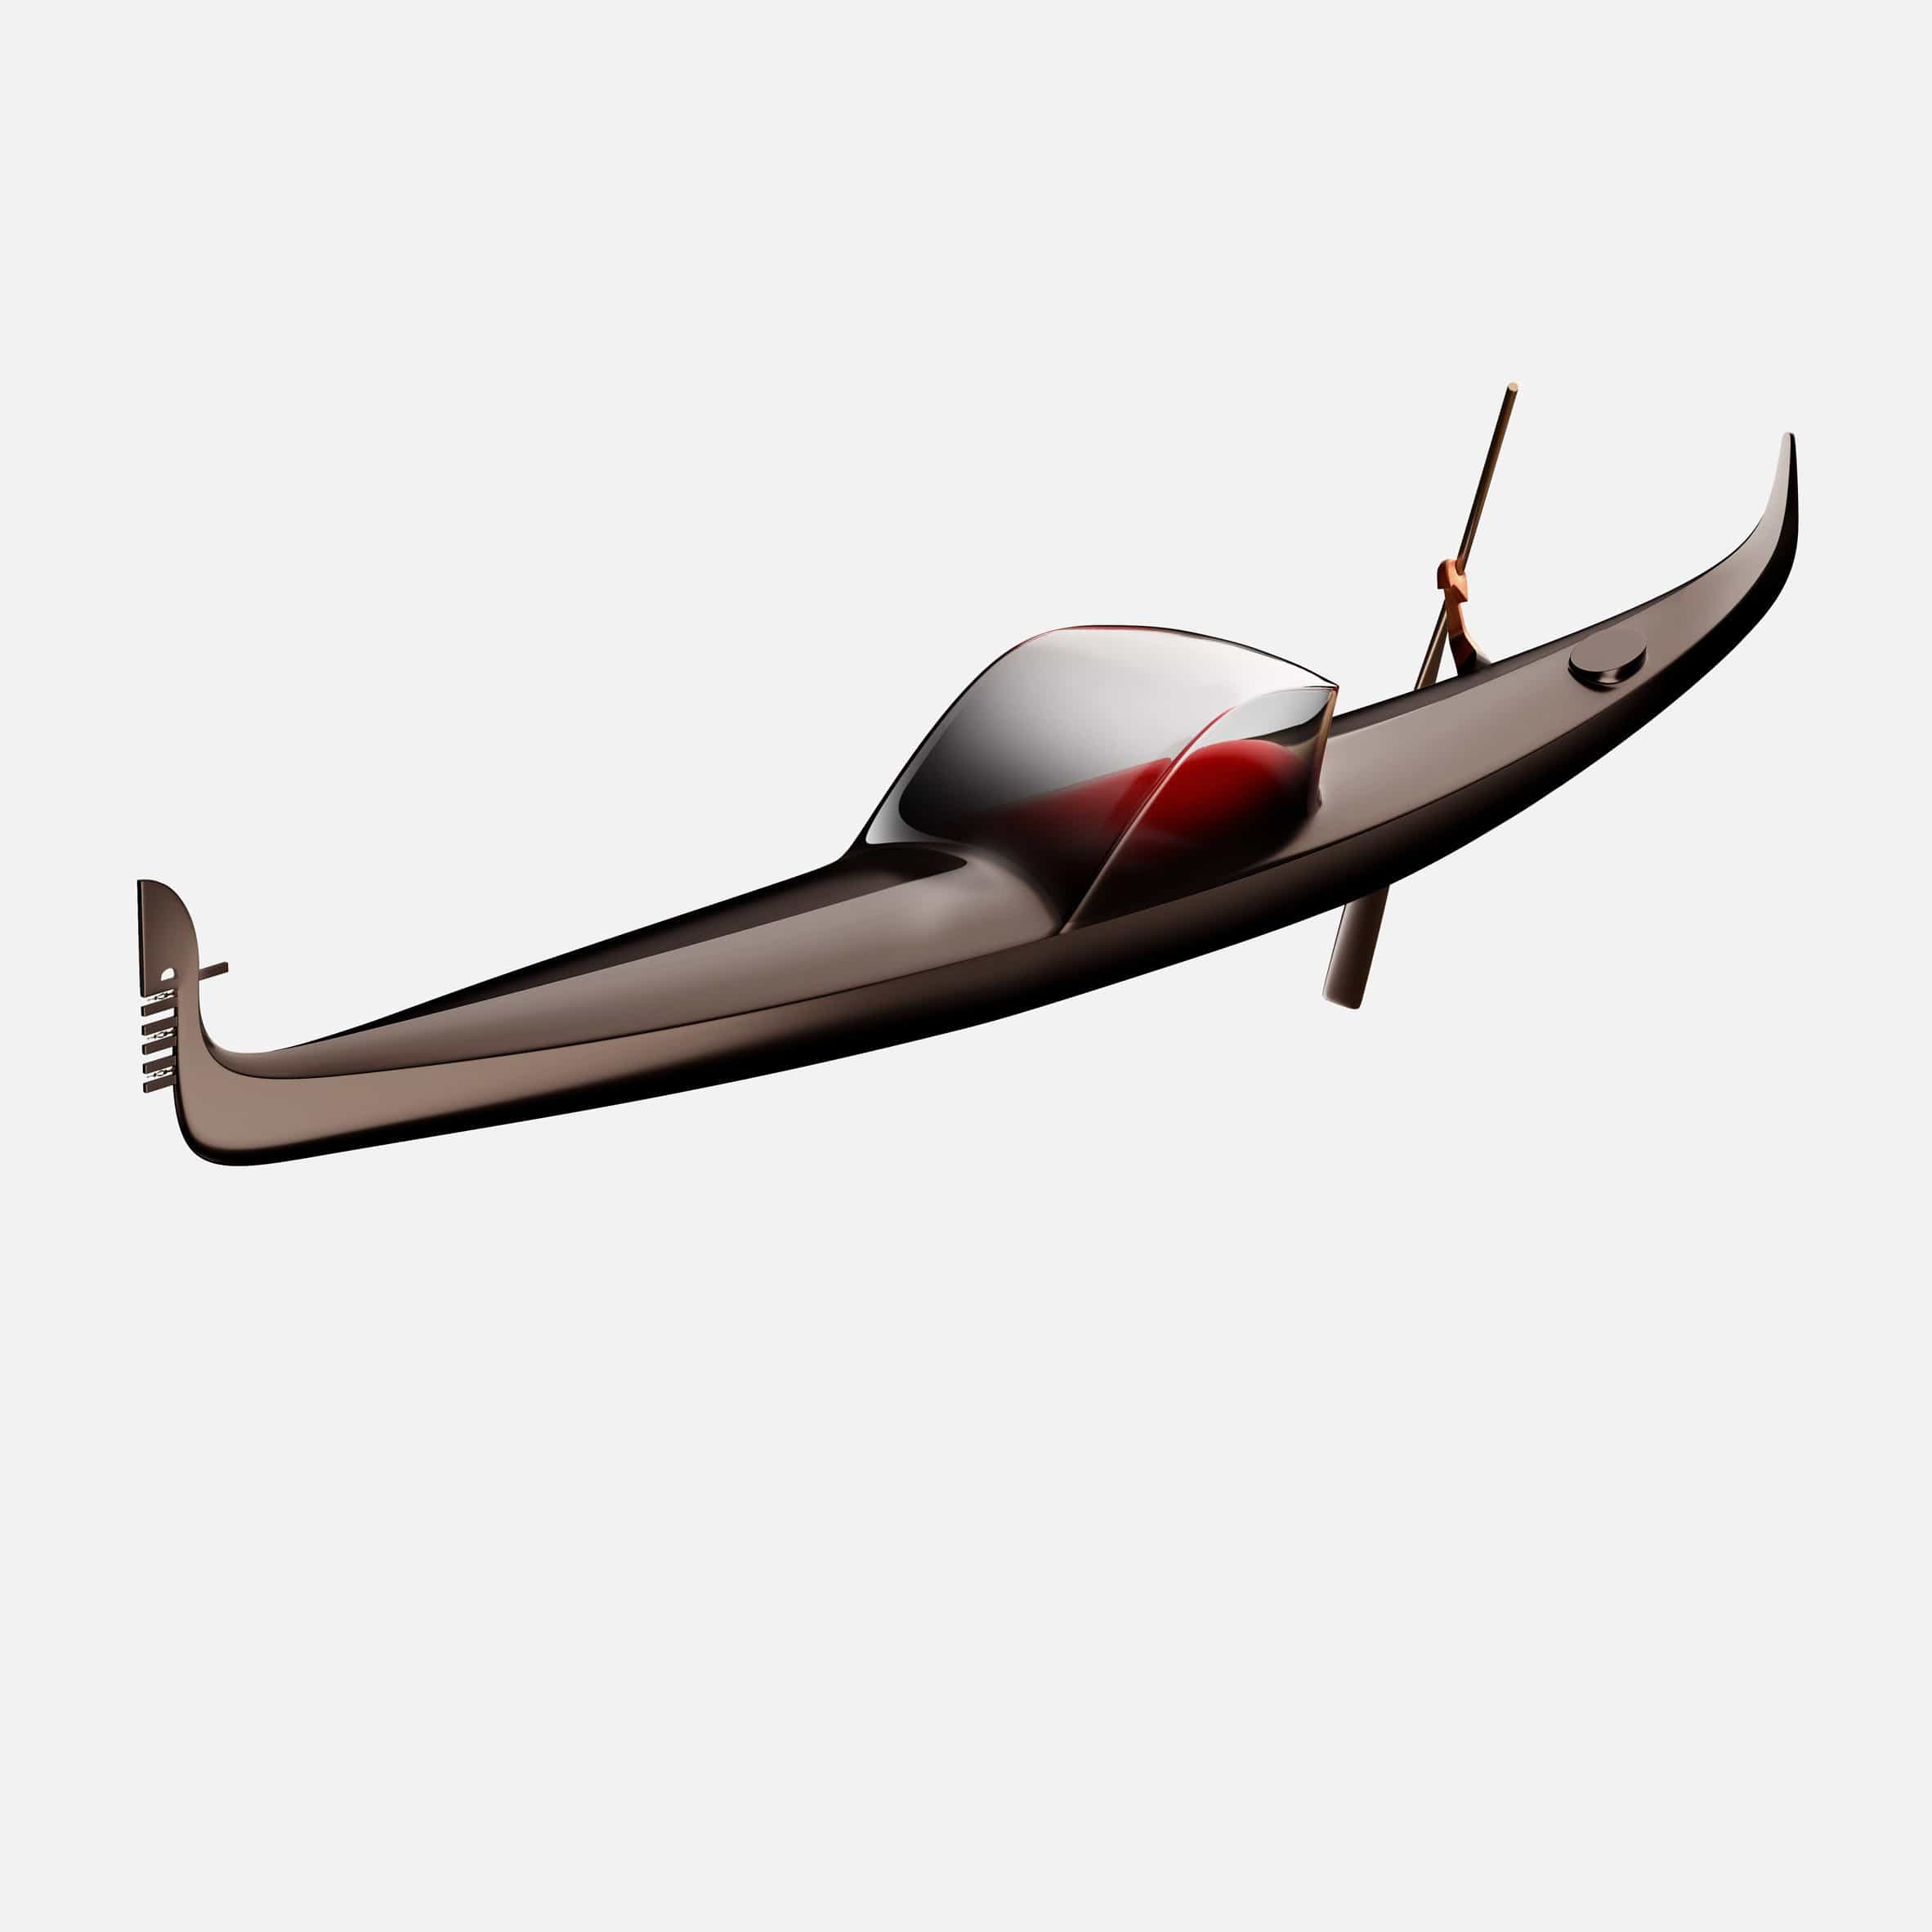 Philippe Starck imagina la góndola futurista como un "símbolo para el futuro de Venecia"